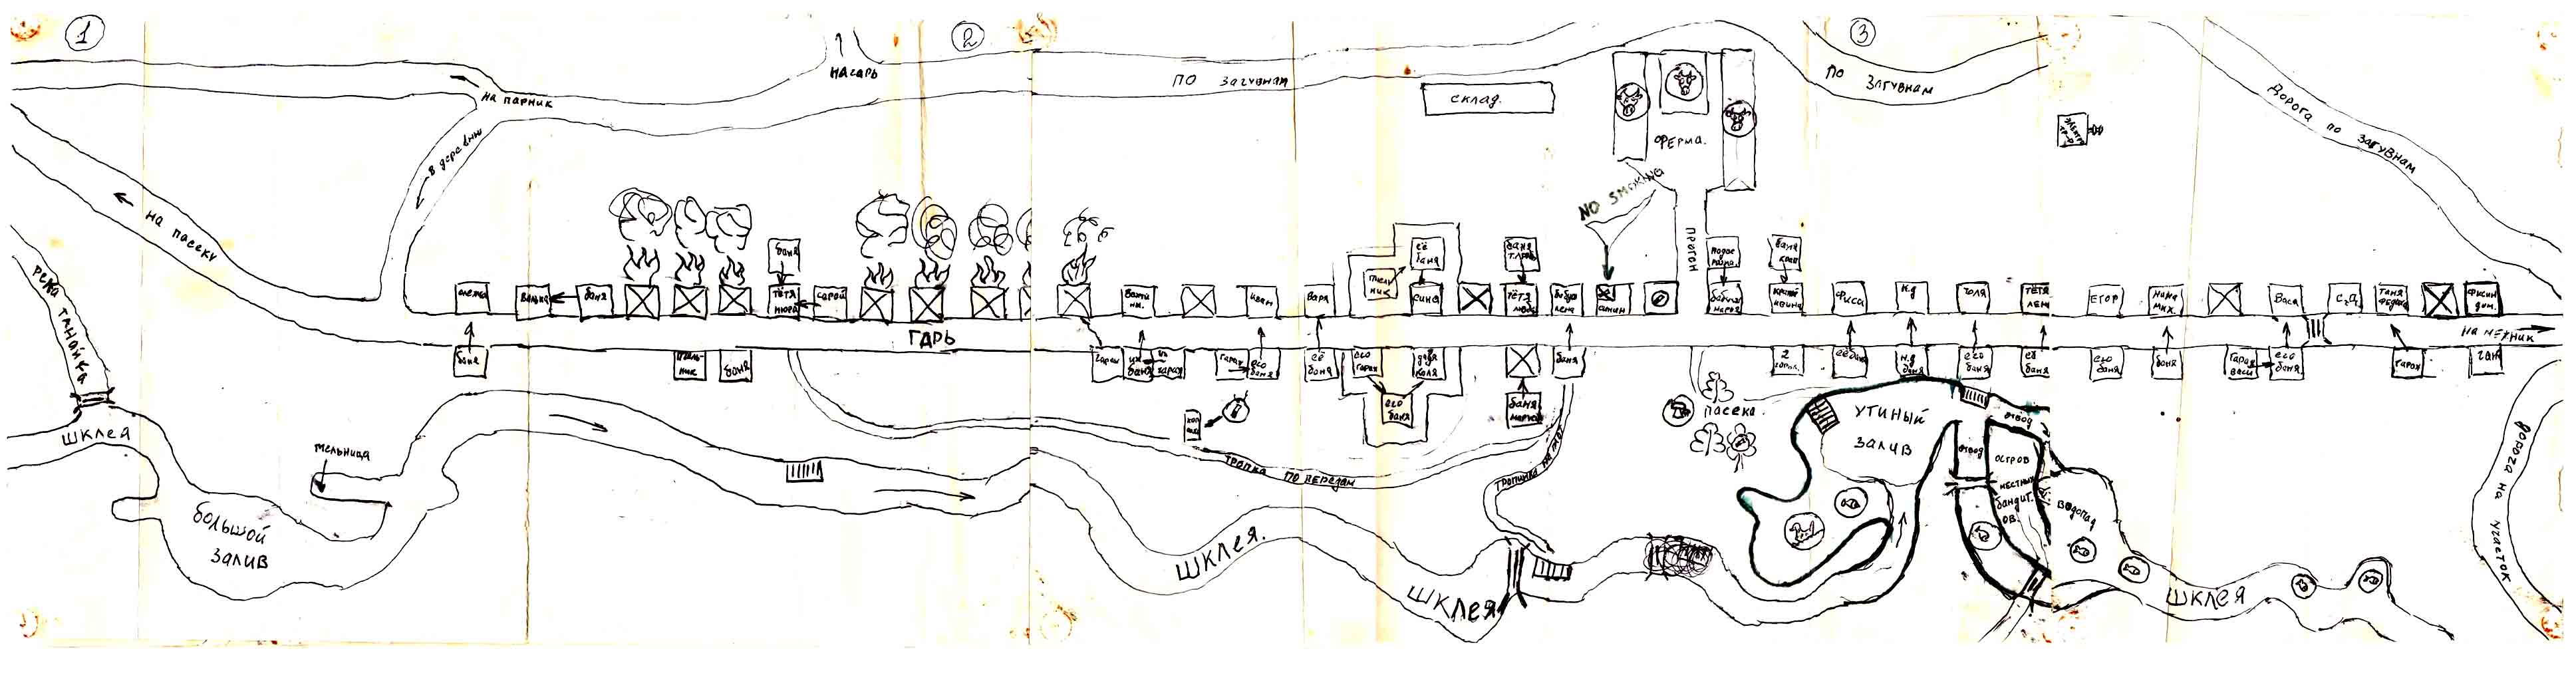 Карта Танайки, нарисованная неизвестным автором